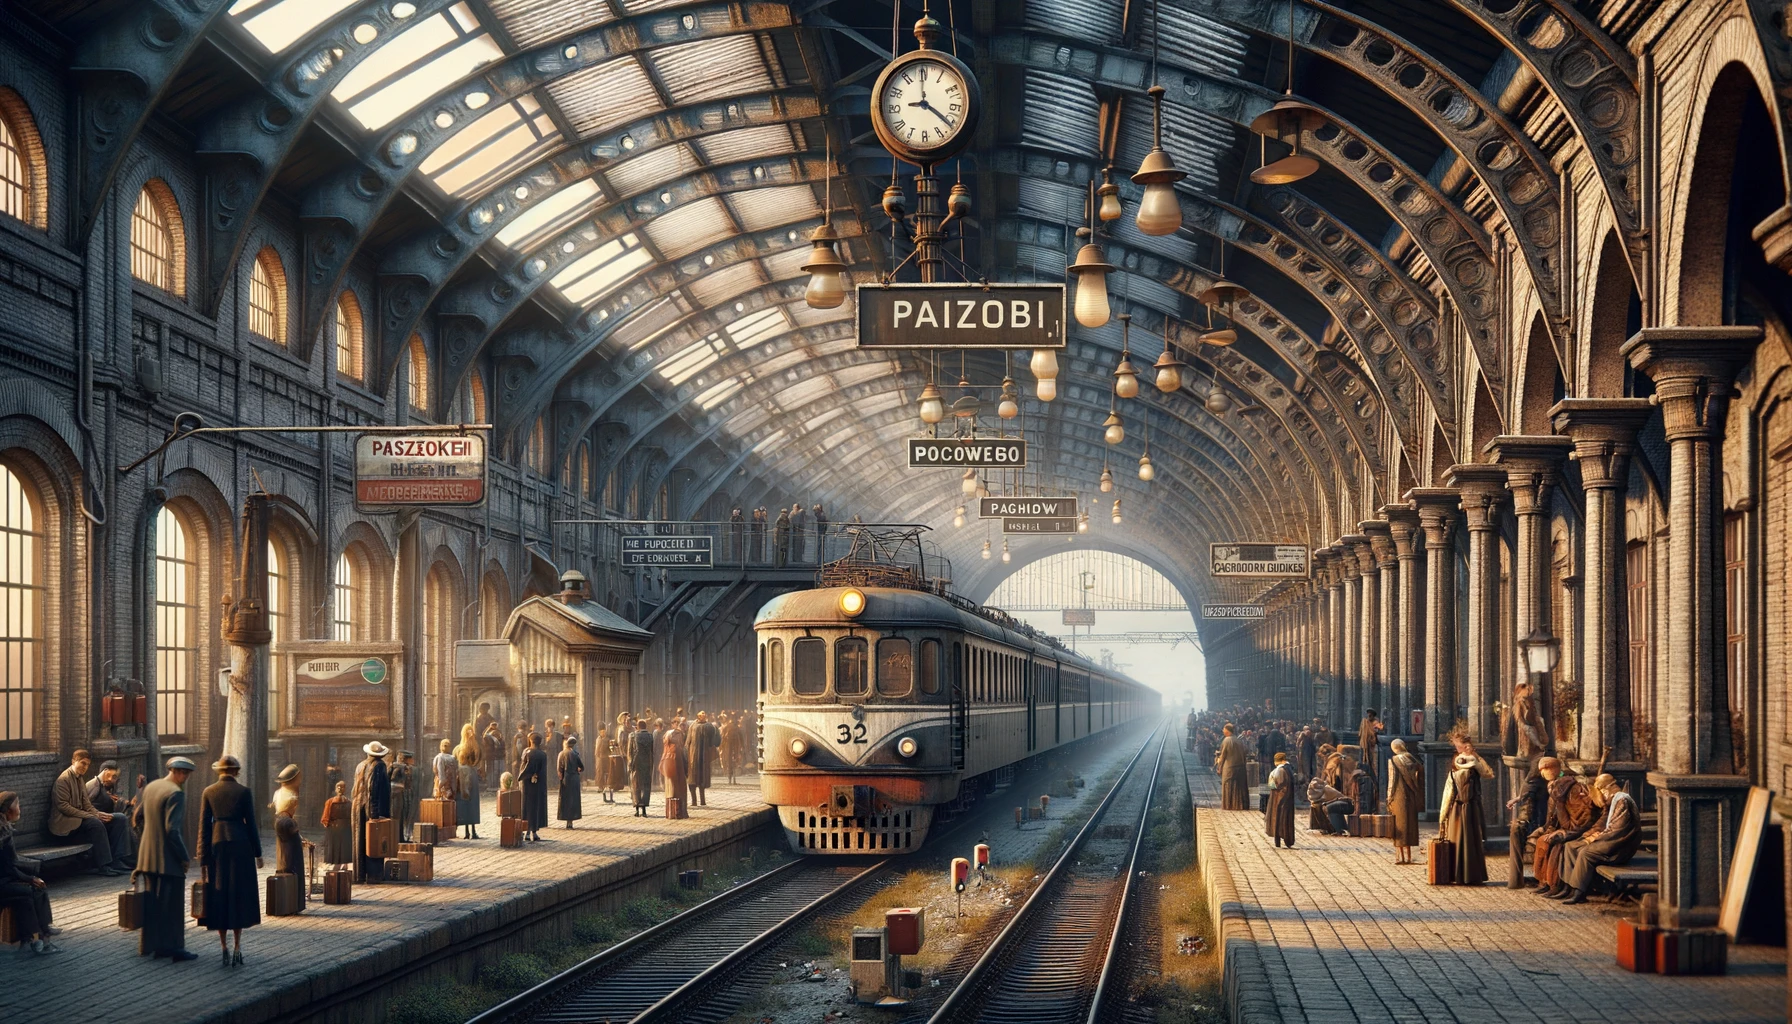 Una foto orizzontale e fotorealistica di un treno a vapore d'epoca in una stazione ferroviaria, con passeggeri in costumi d'epoca in attesa di salire a bordo dei vagoni